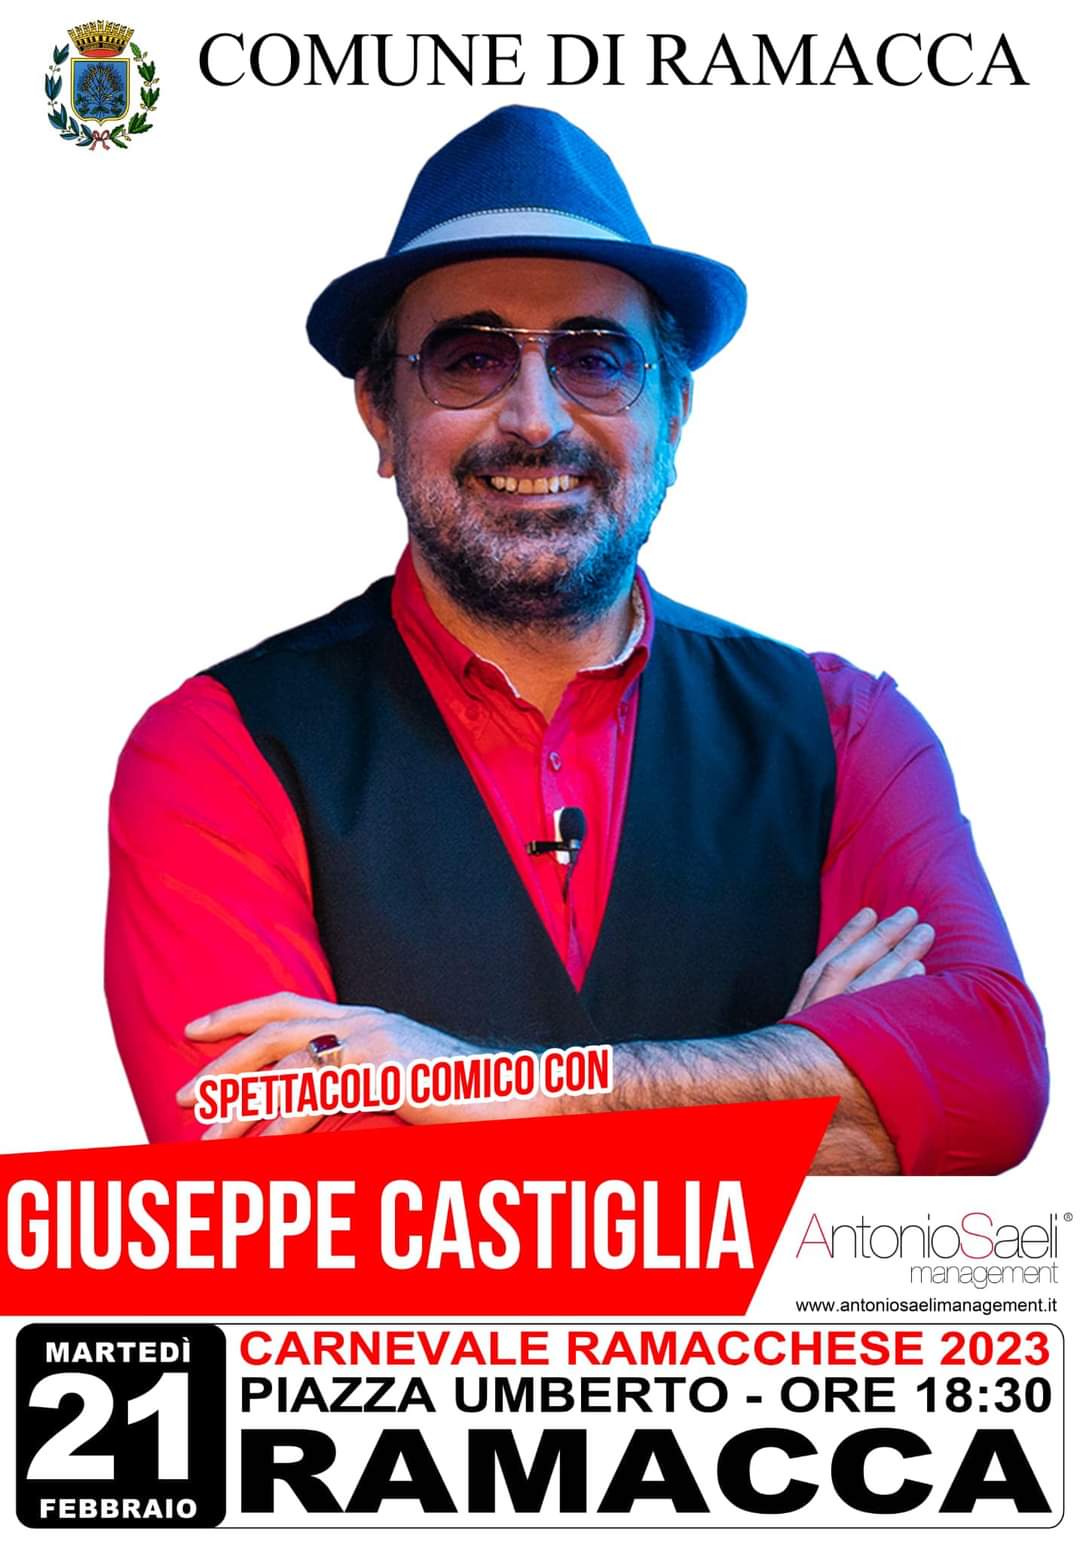 Carnevale ramacchese 2023 Giuseppe Castiglia